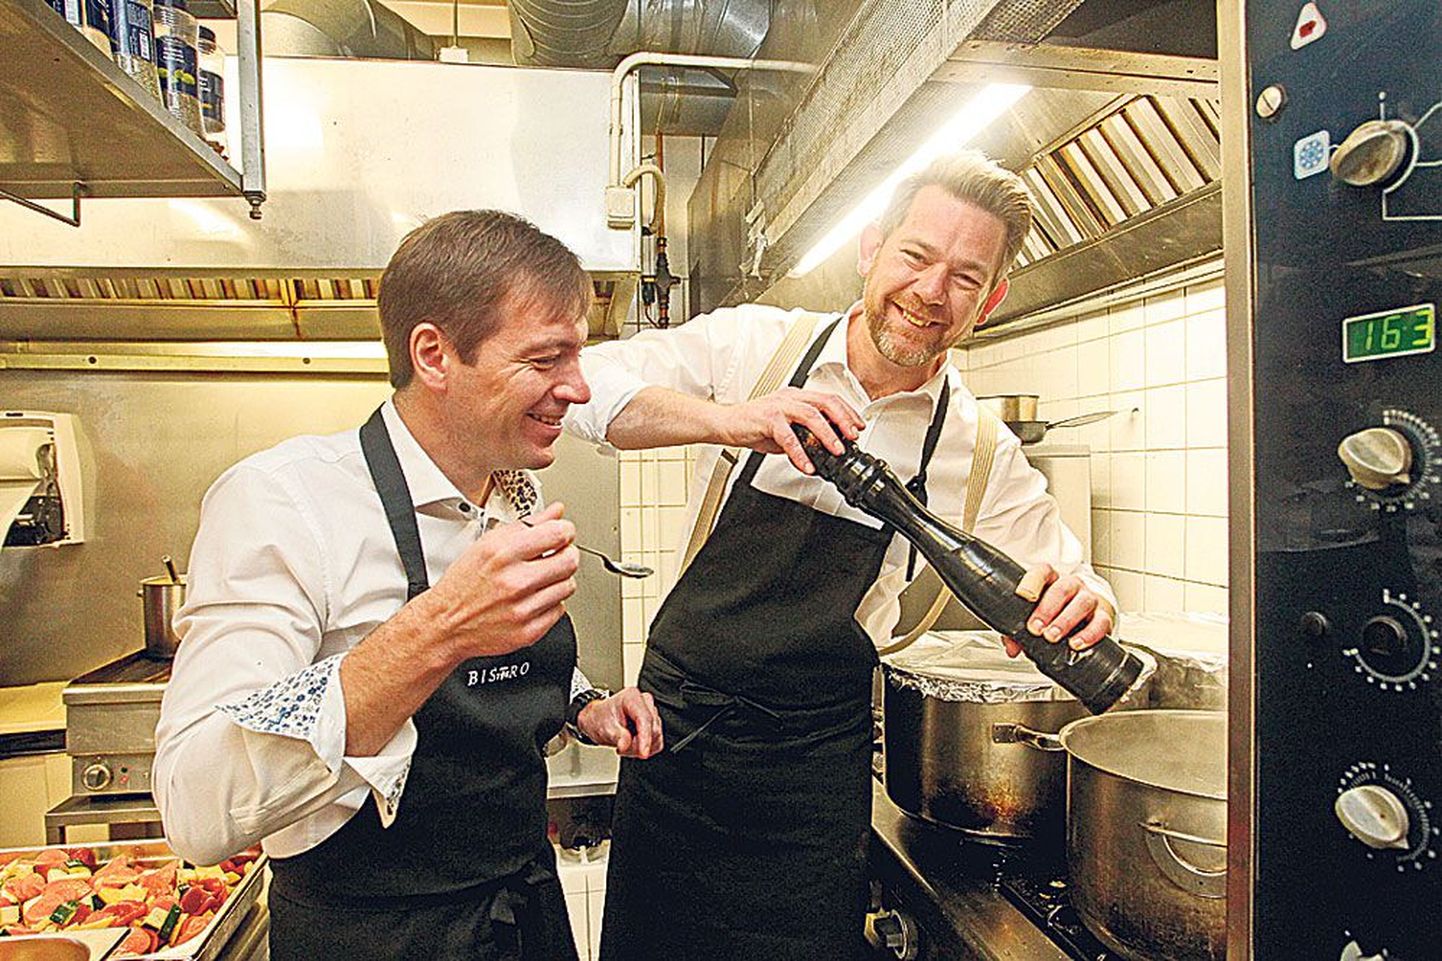 Vilde lokaali juht Priit Reiman (vasakul) näitab, et on oma sõbrale Uppsalast ehk meisterkokk Johan Dahlqvistile hea koostööpartner nii köögis kui äriplaanide seadmisel.